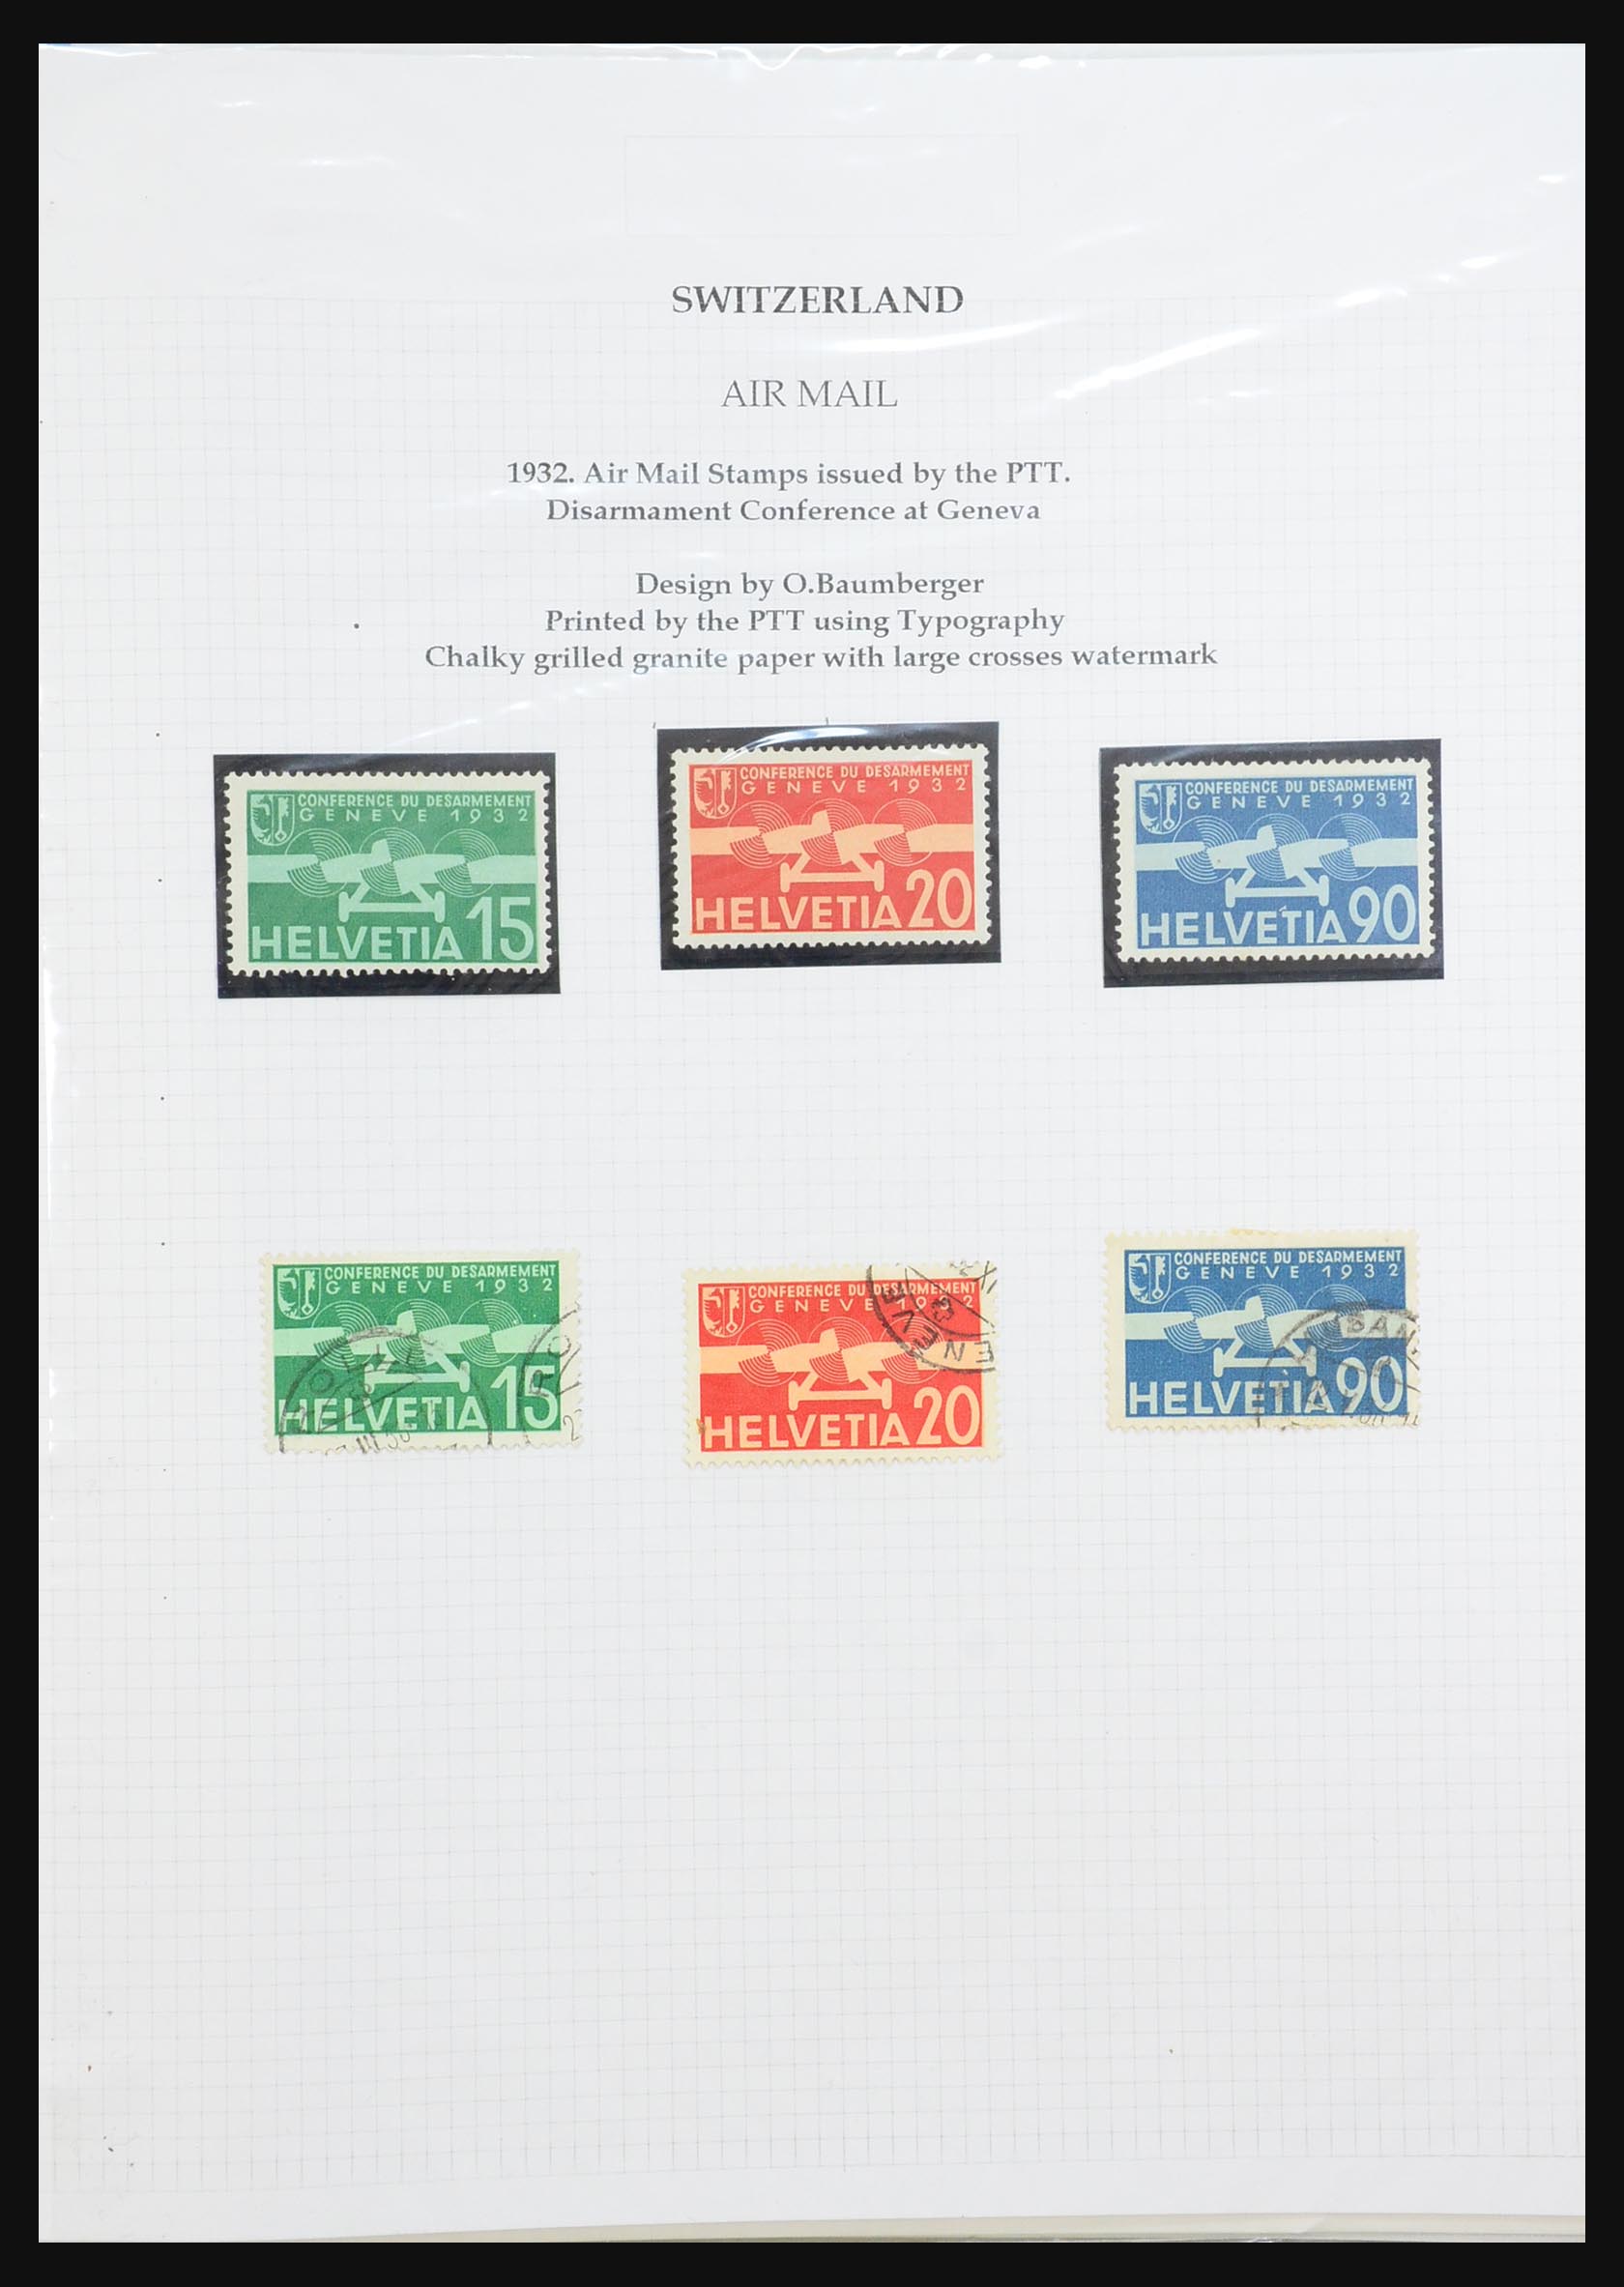 31444 055 - 31444 Zwitserland luchtpost brieven 1922-1946.